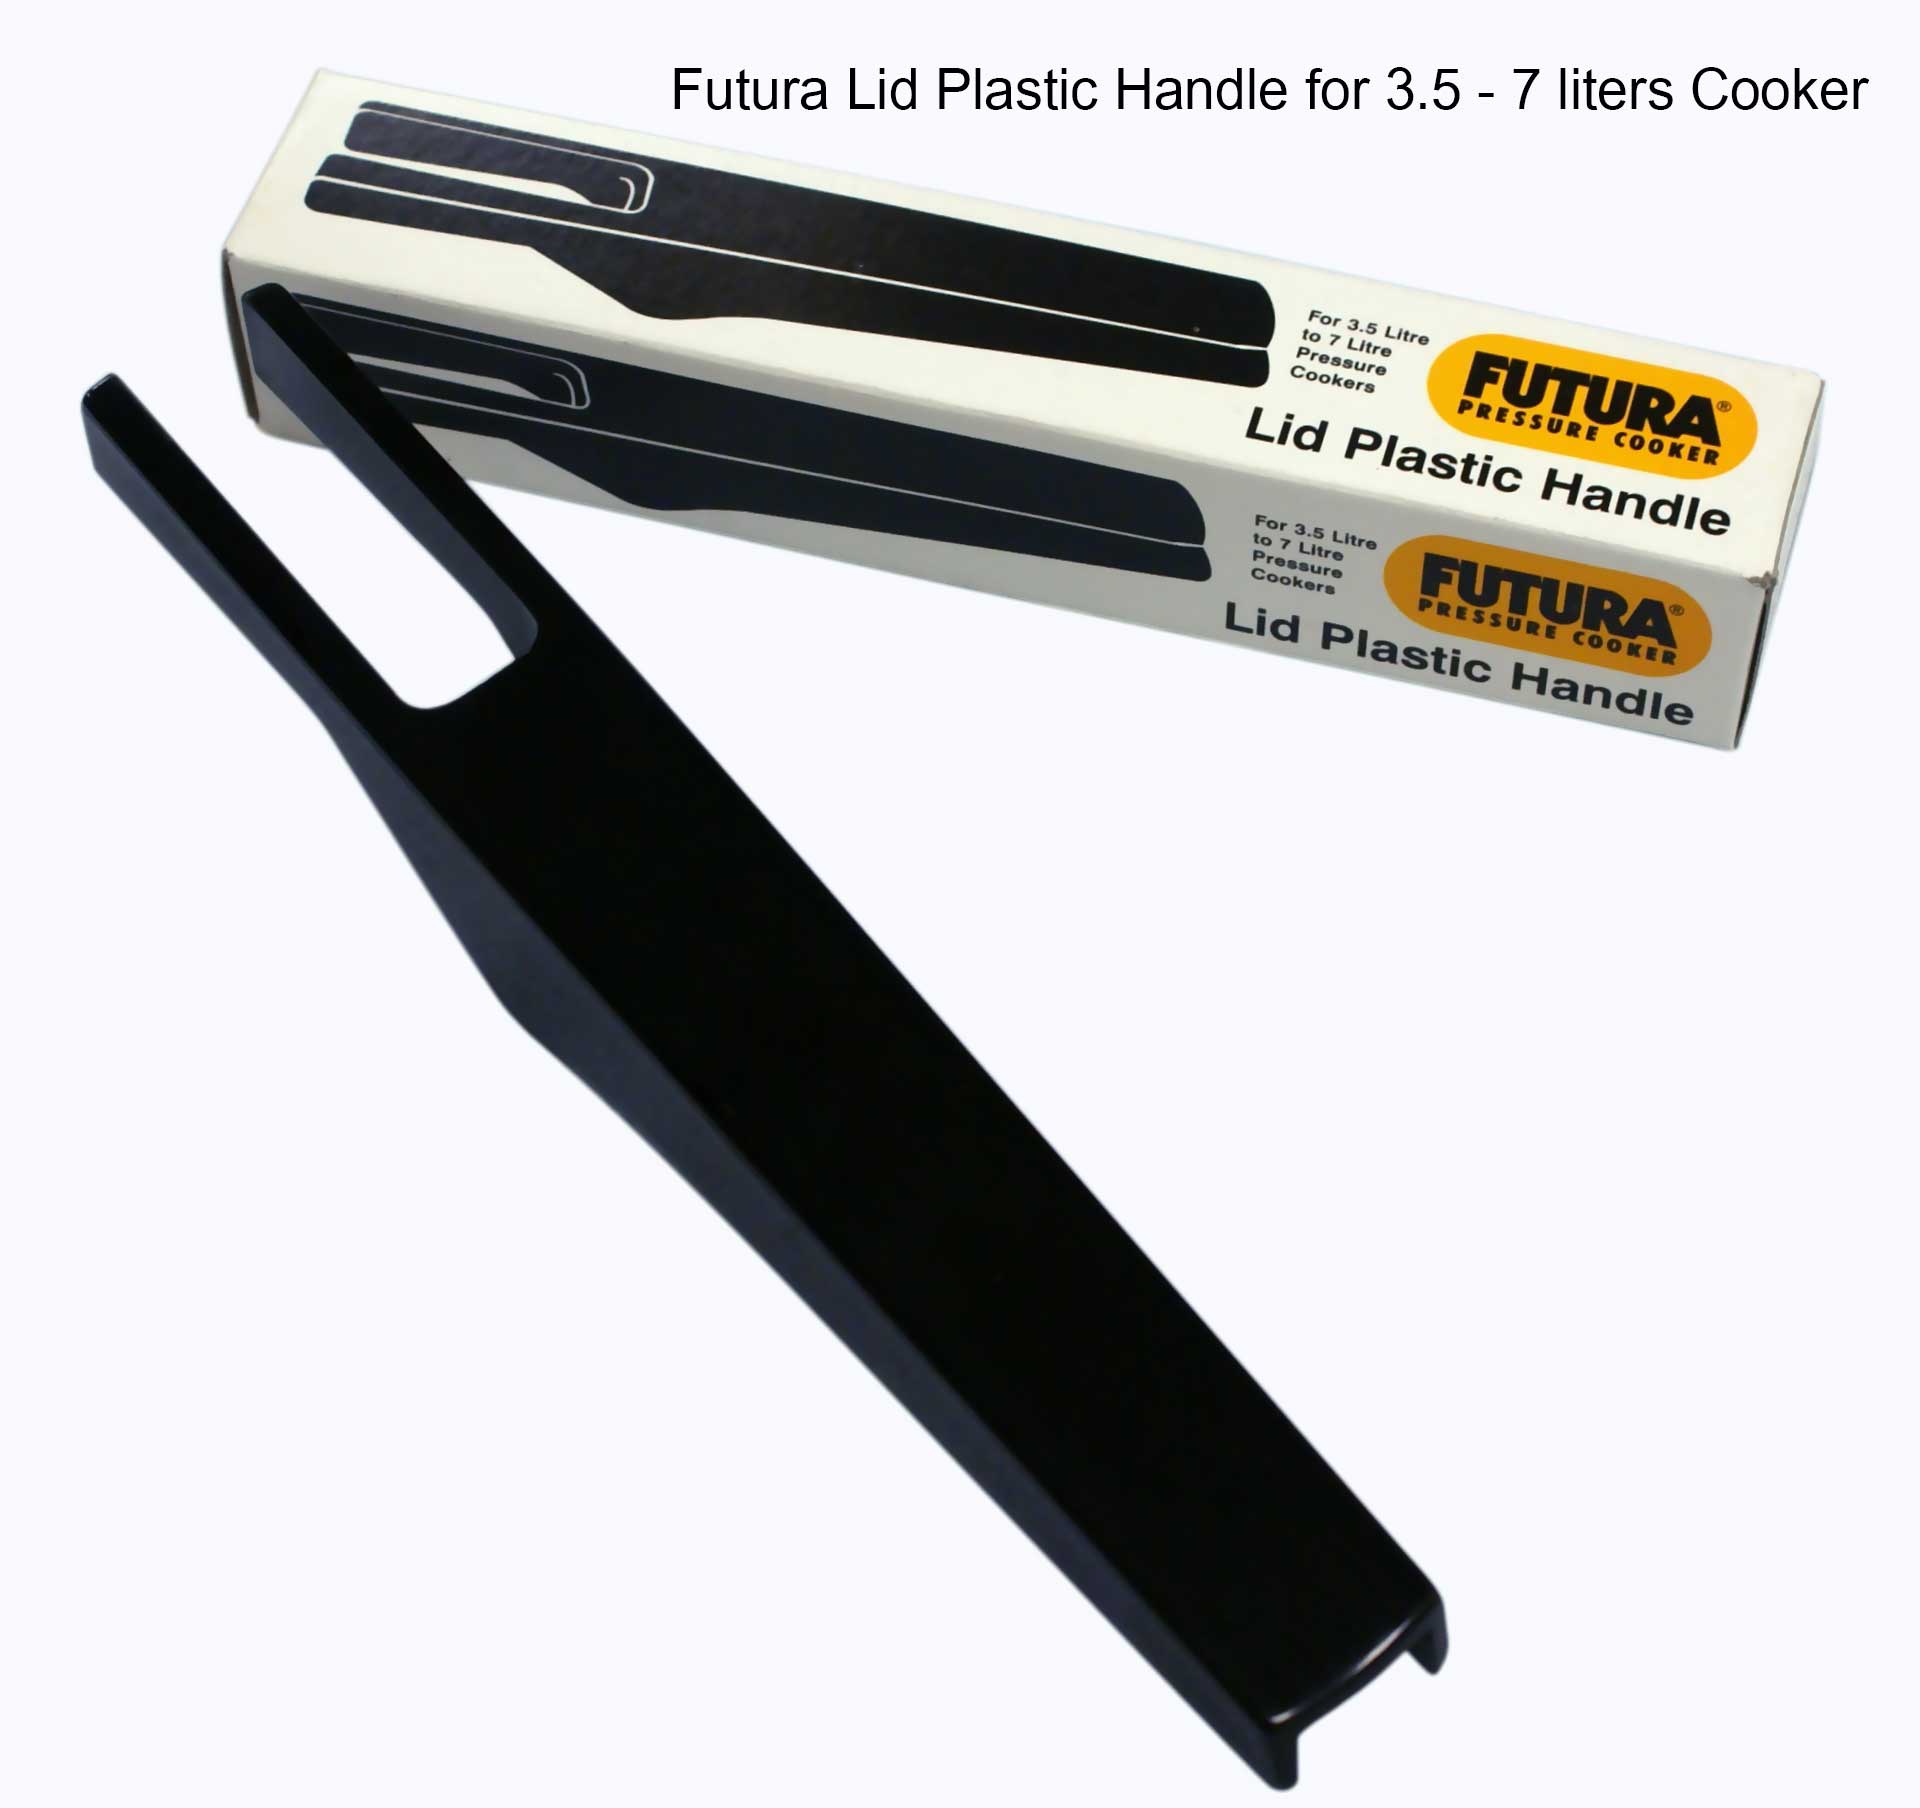 Futura - Lid Plastic Handle - 3.5-7 Liter